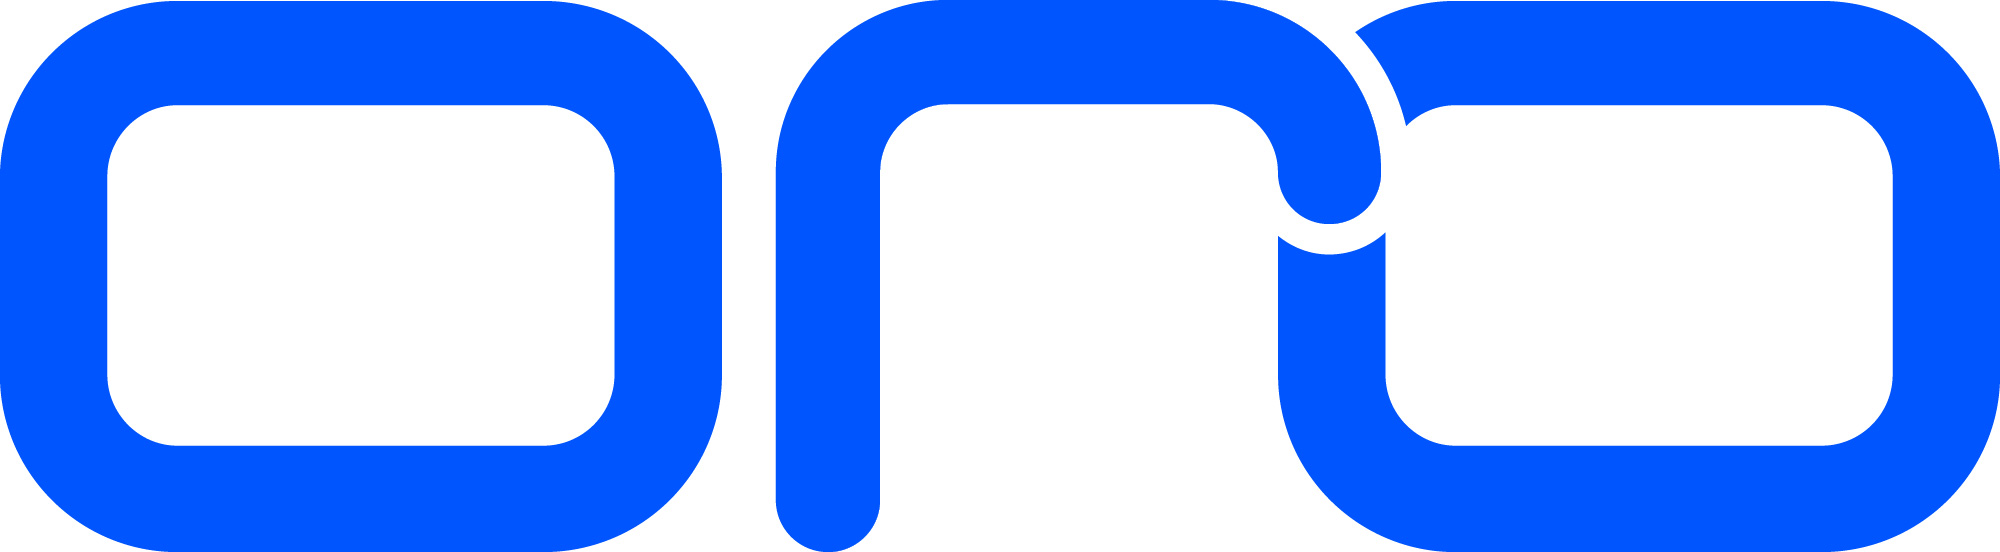 ORO logo